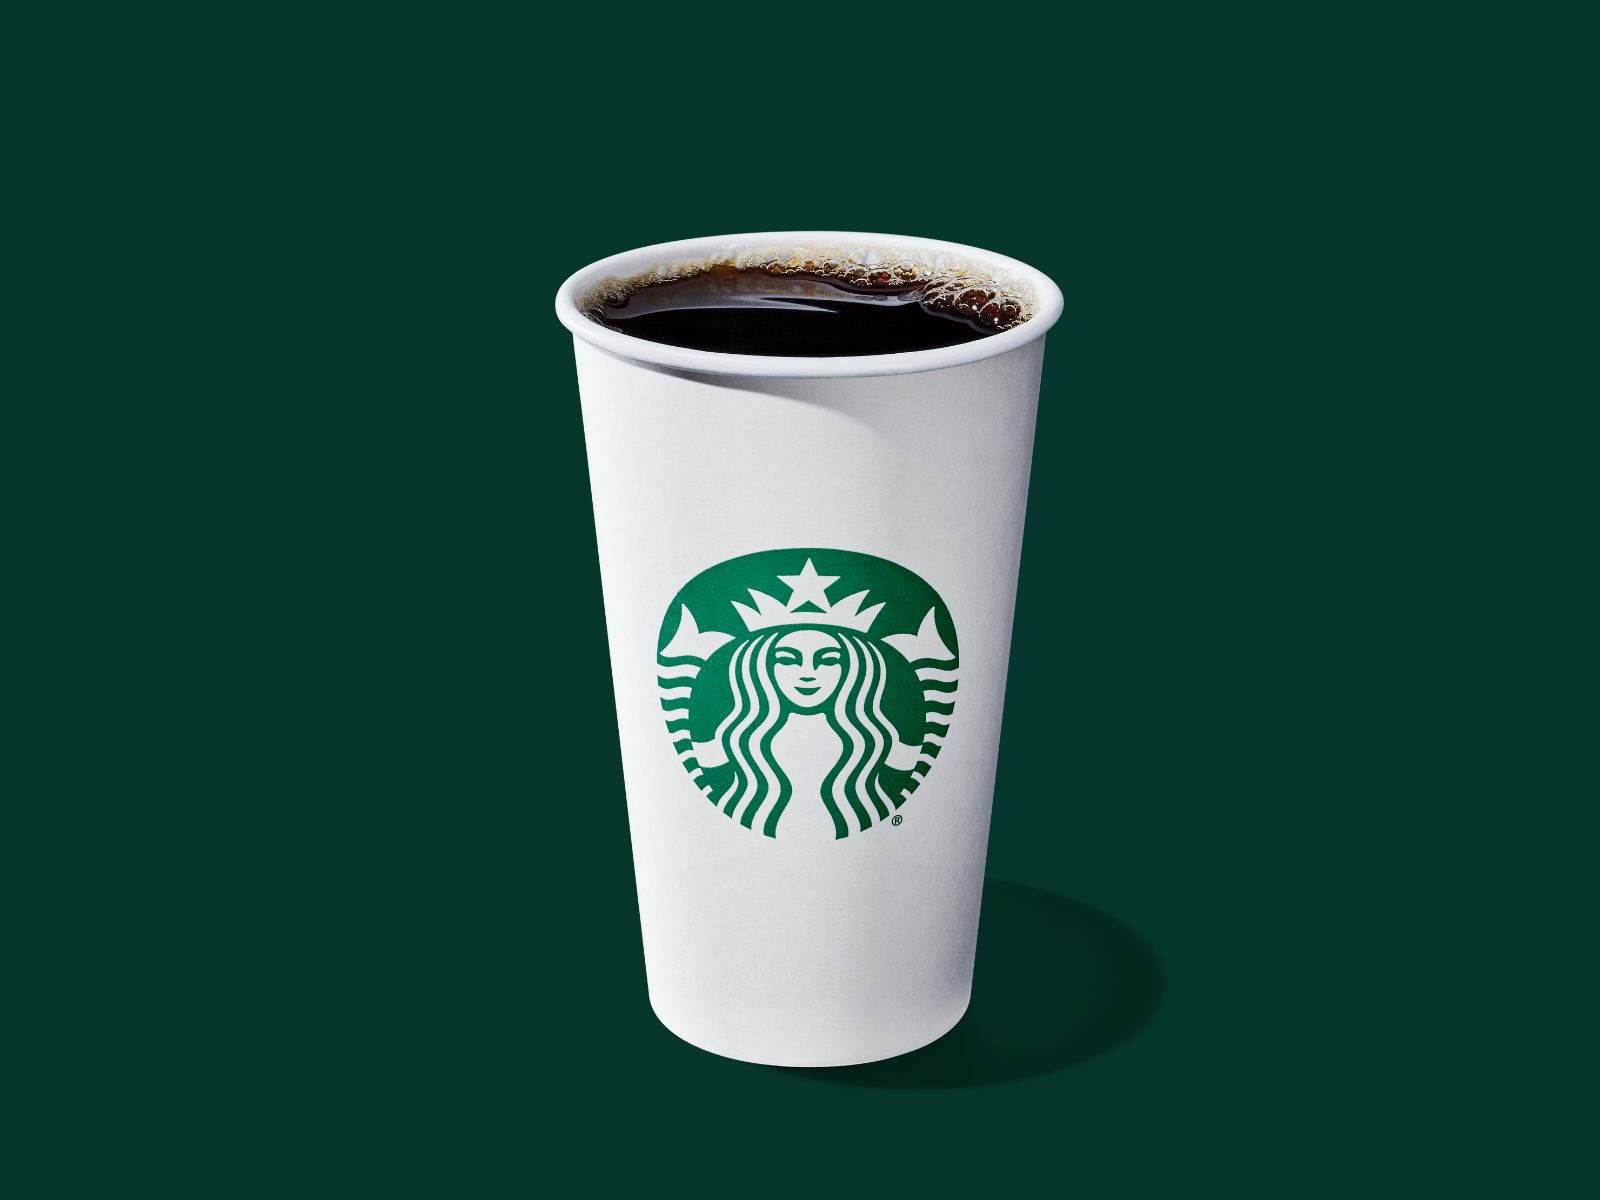 Healthy Starbucks Drinks: Brewed Coffee